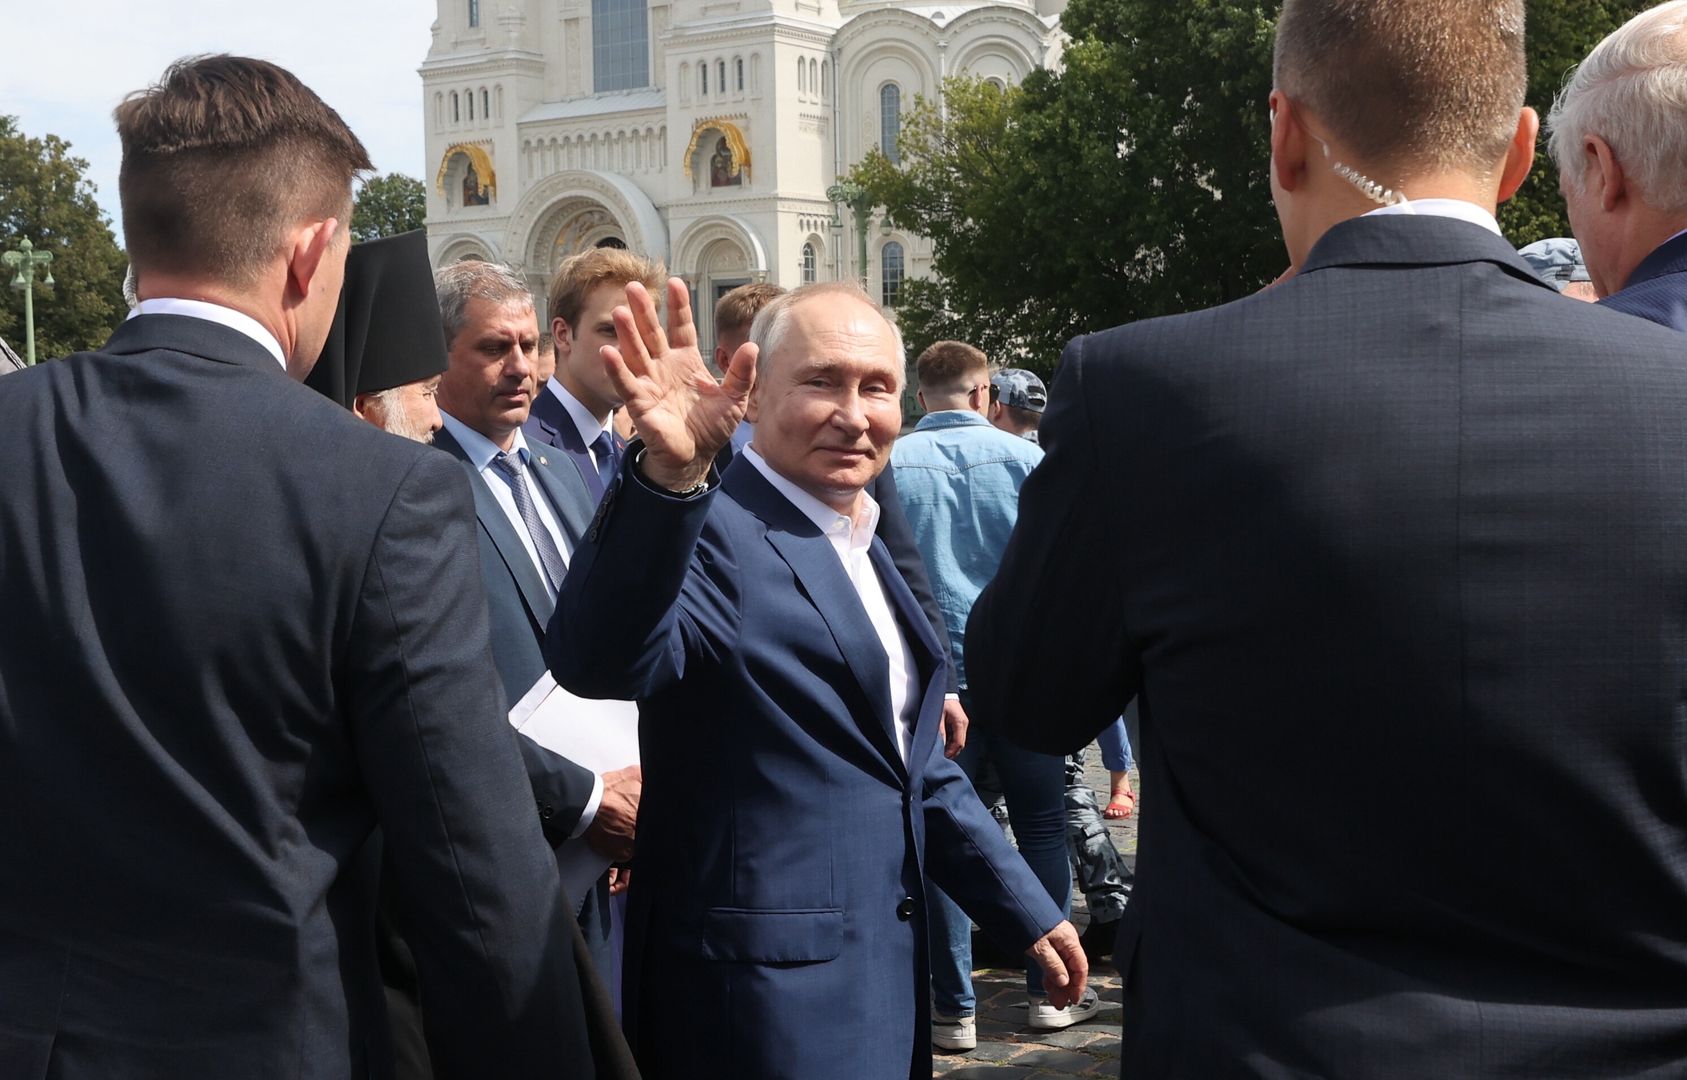 Dziwne gesty Putina nie umknęły uwadze. Czego tak bardzo się boi?